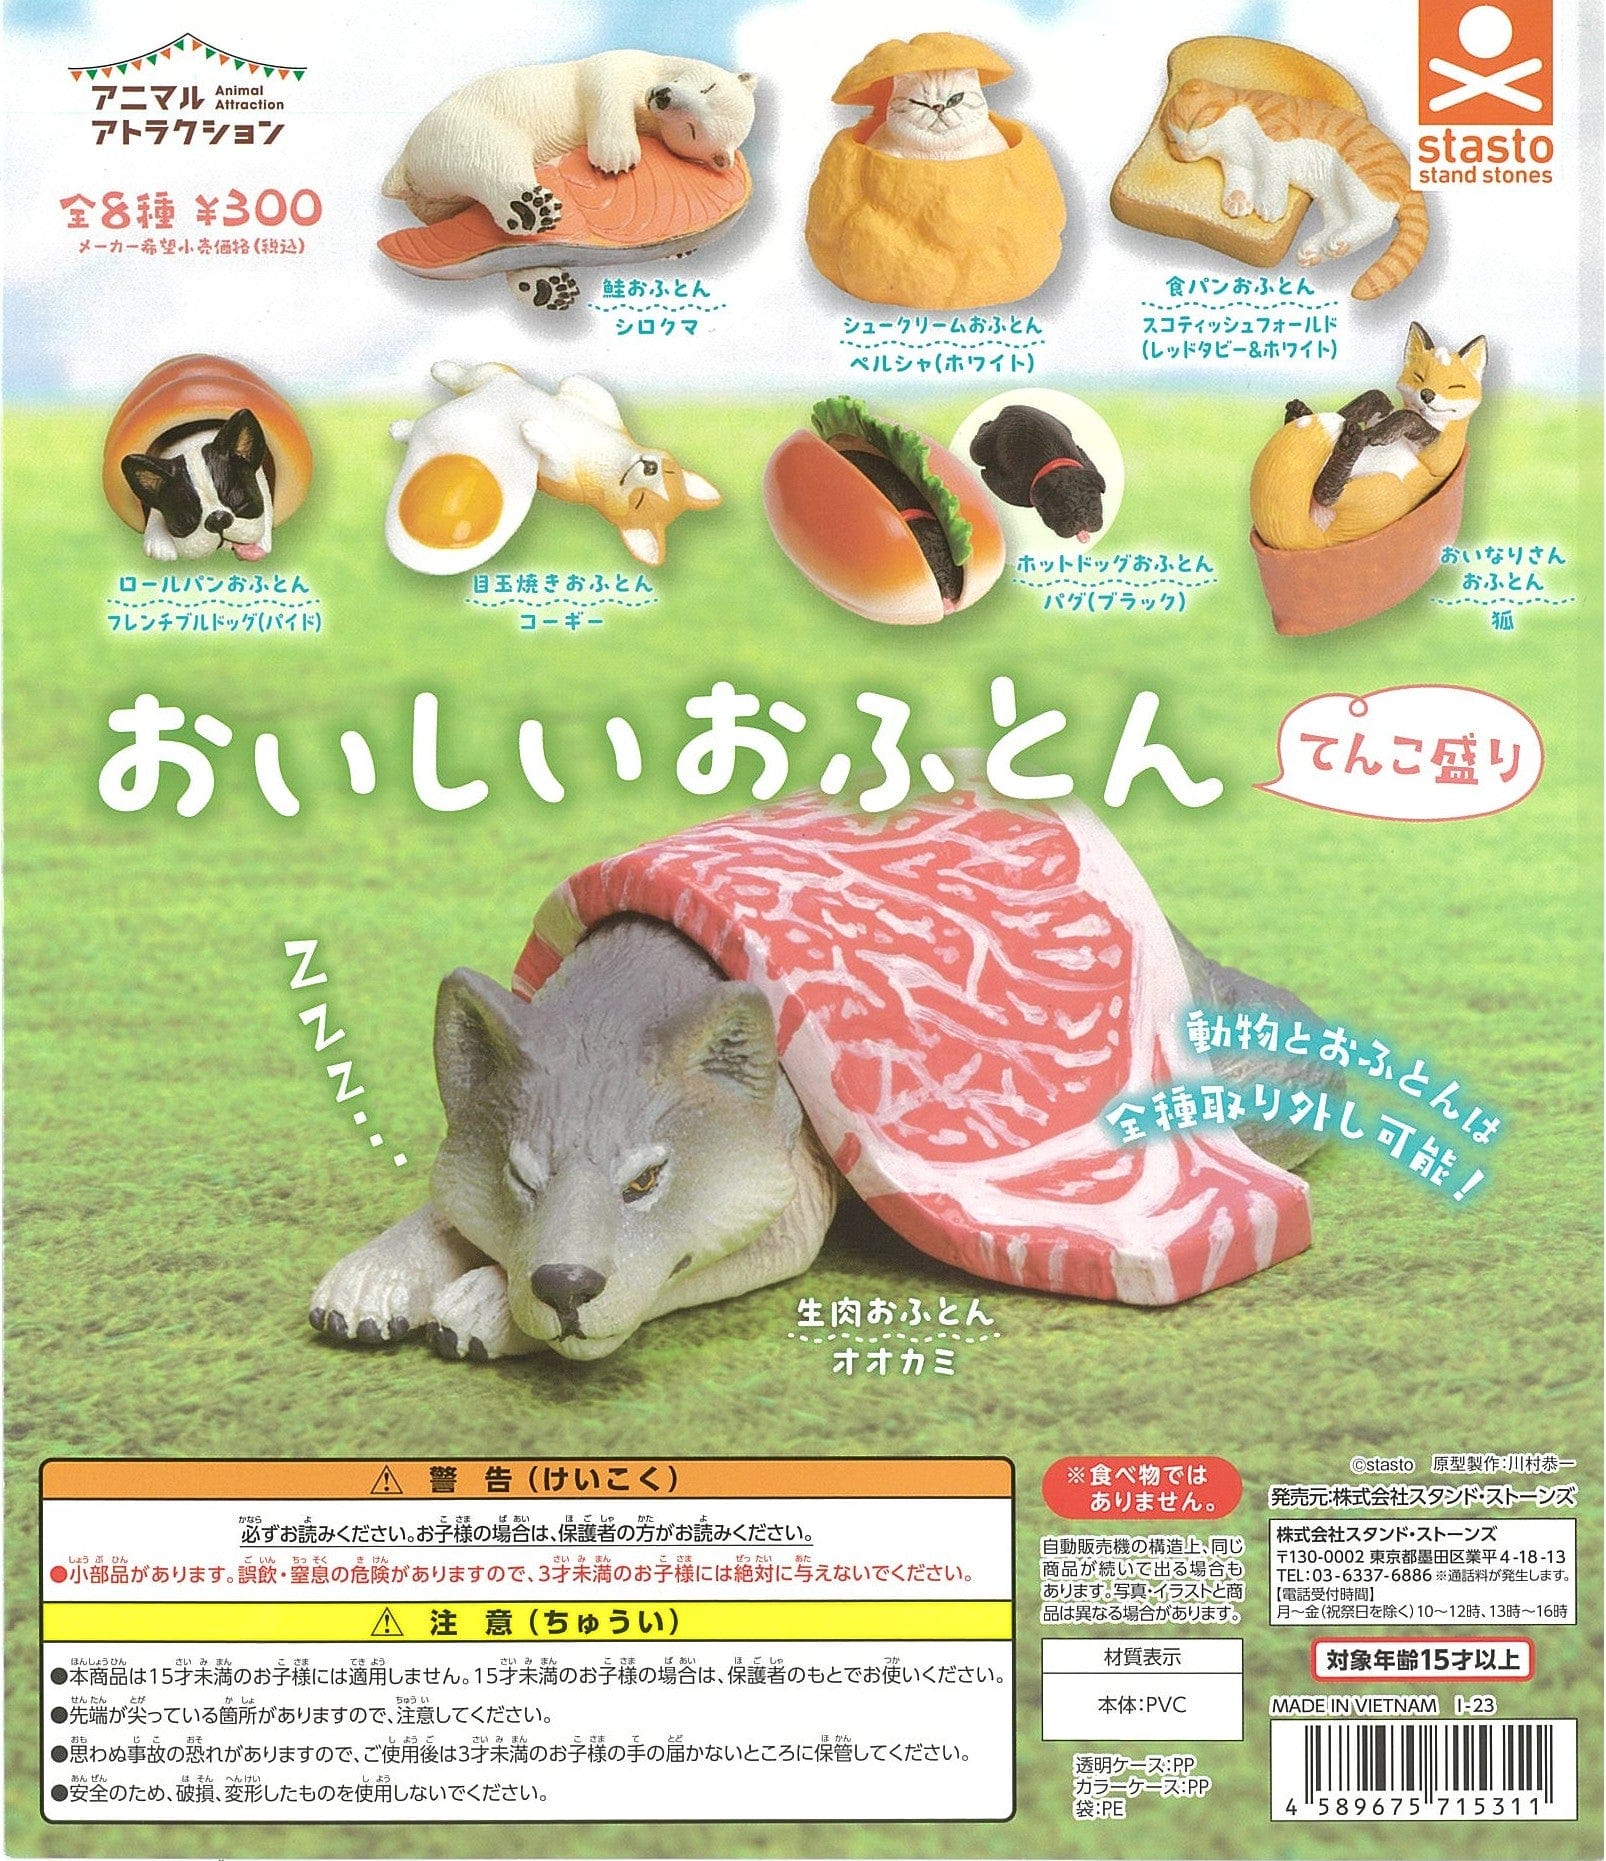 STASTO CP2478 Animal Attraction Oishii Ofuton Tenkomori